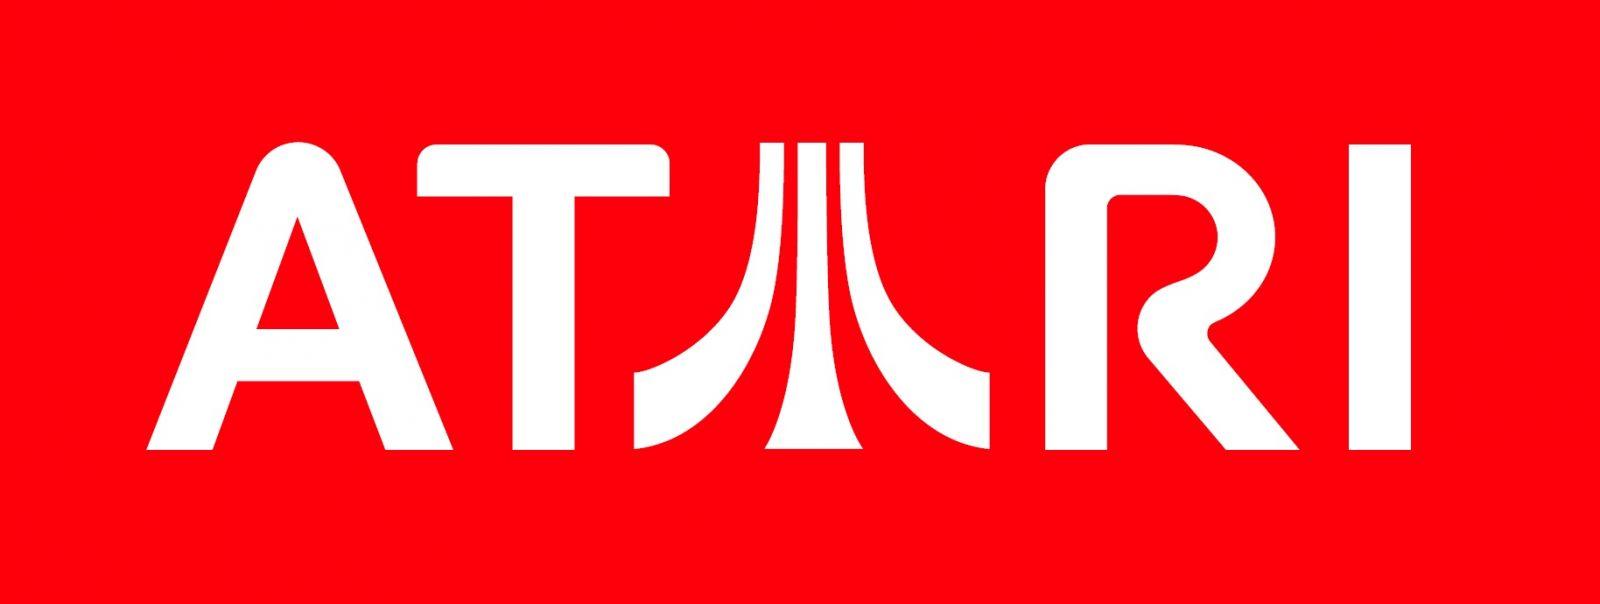 Après l'annonce de sa faillite, Atari trouve un repreneur